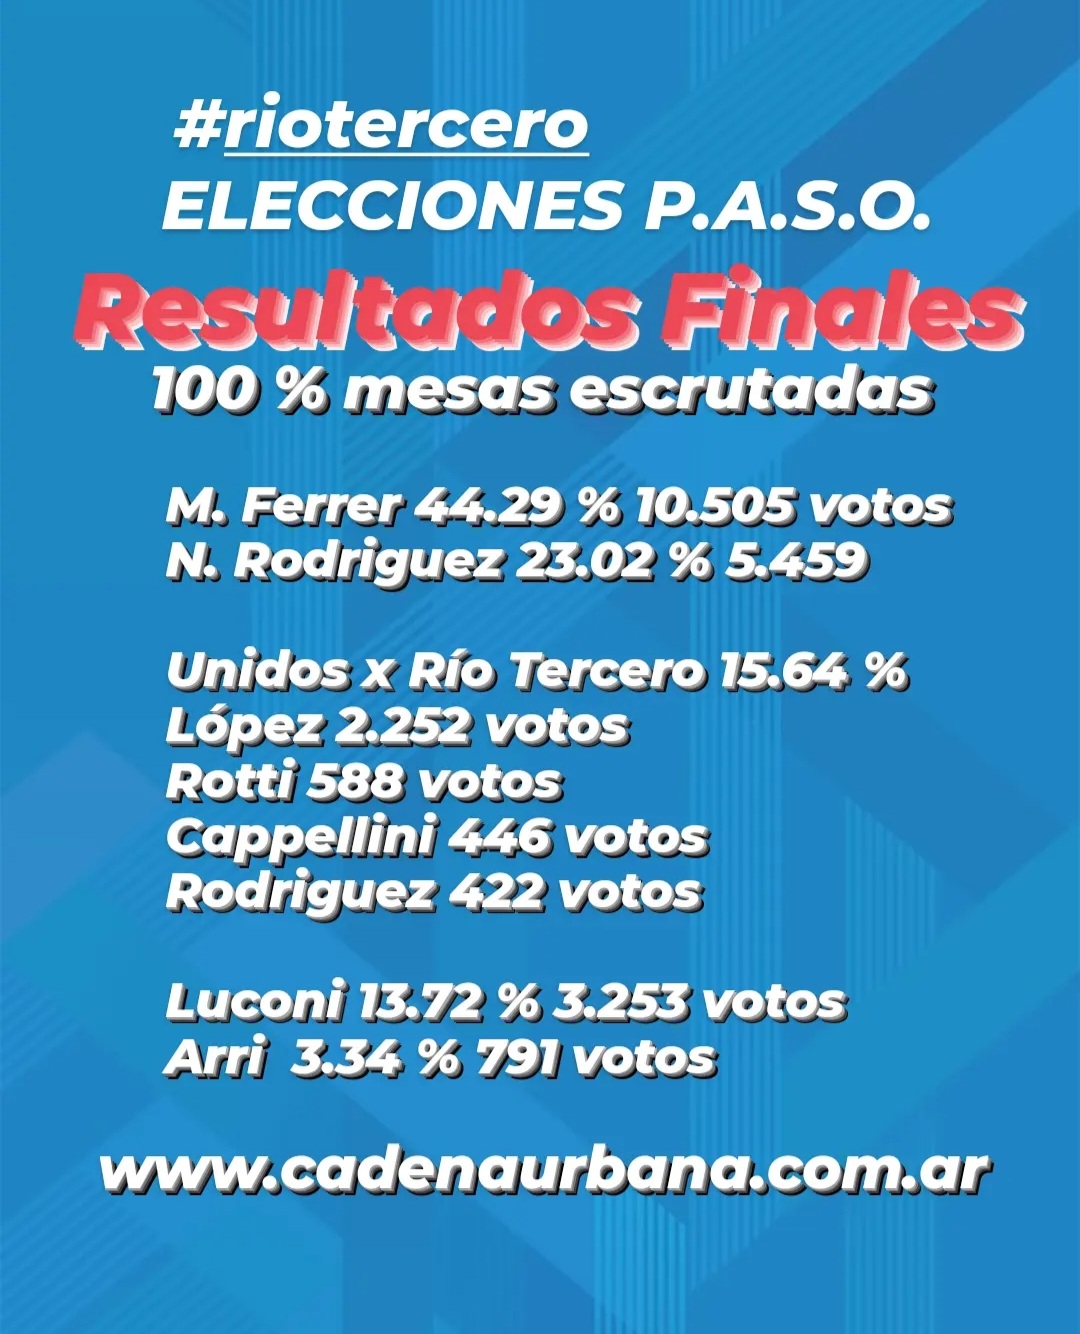 RIO TERCERO ELECCIONES P.A.S.O. RESULTADOS FINALES 